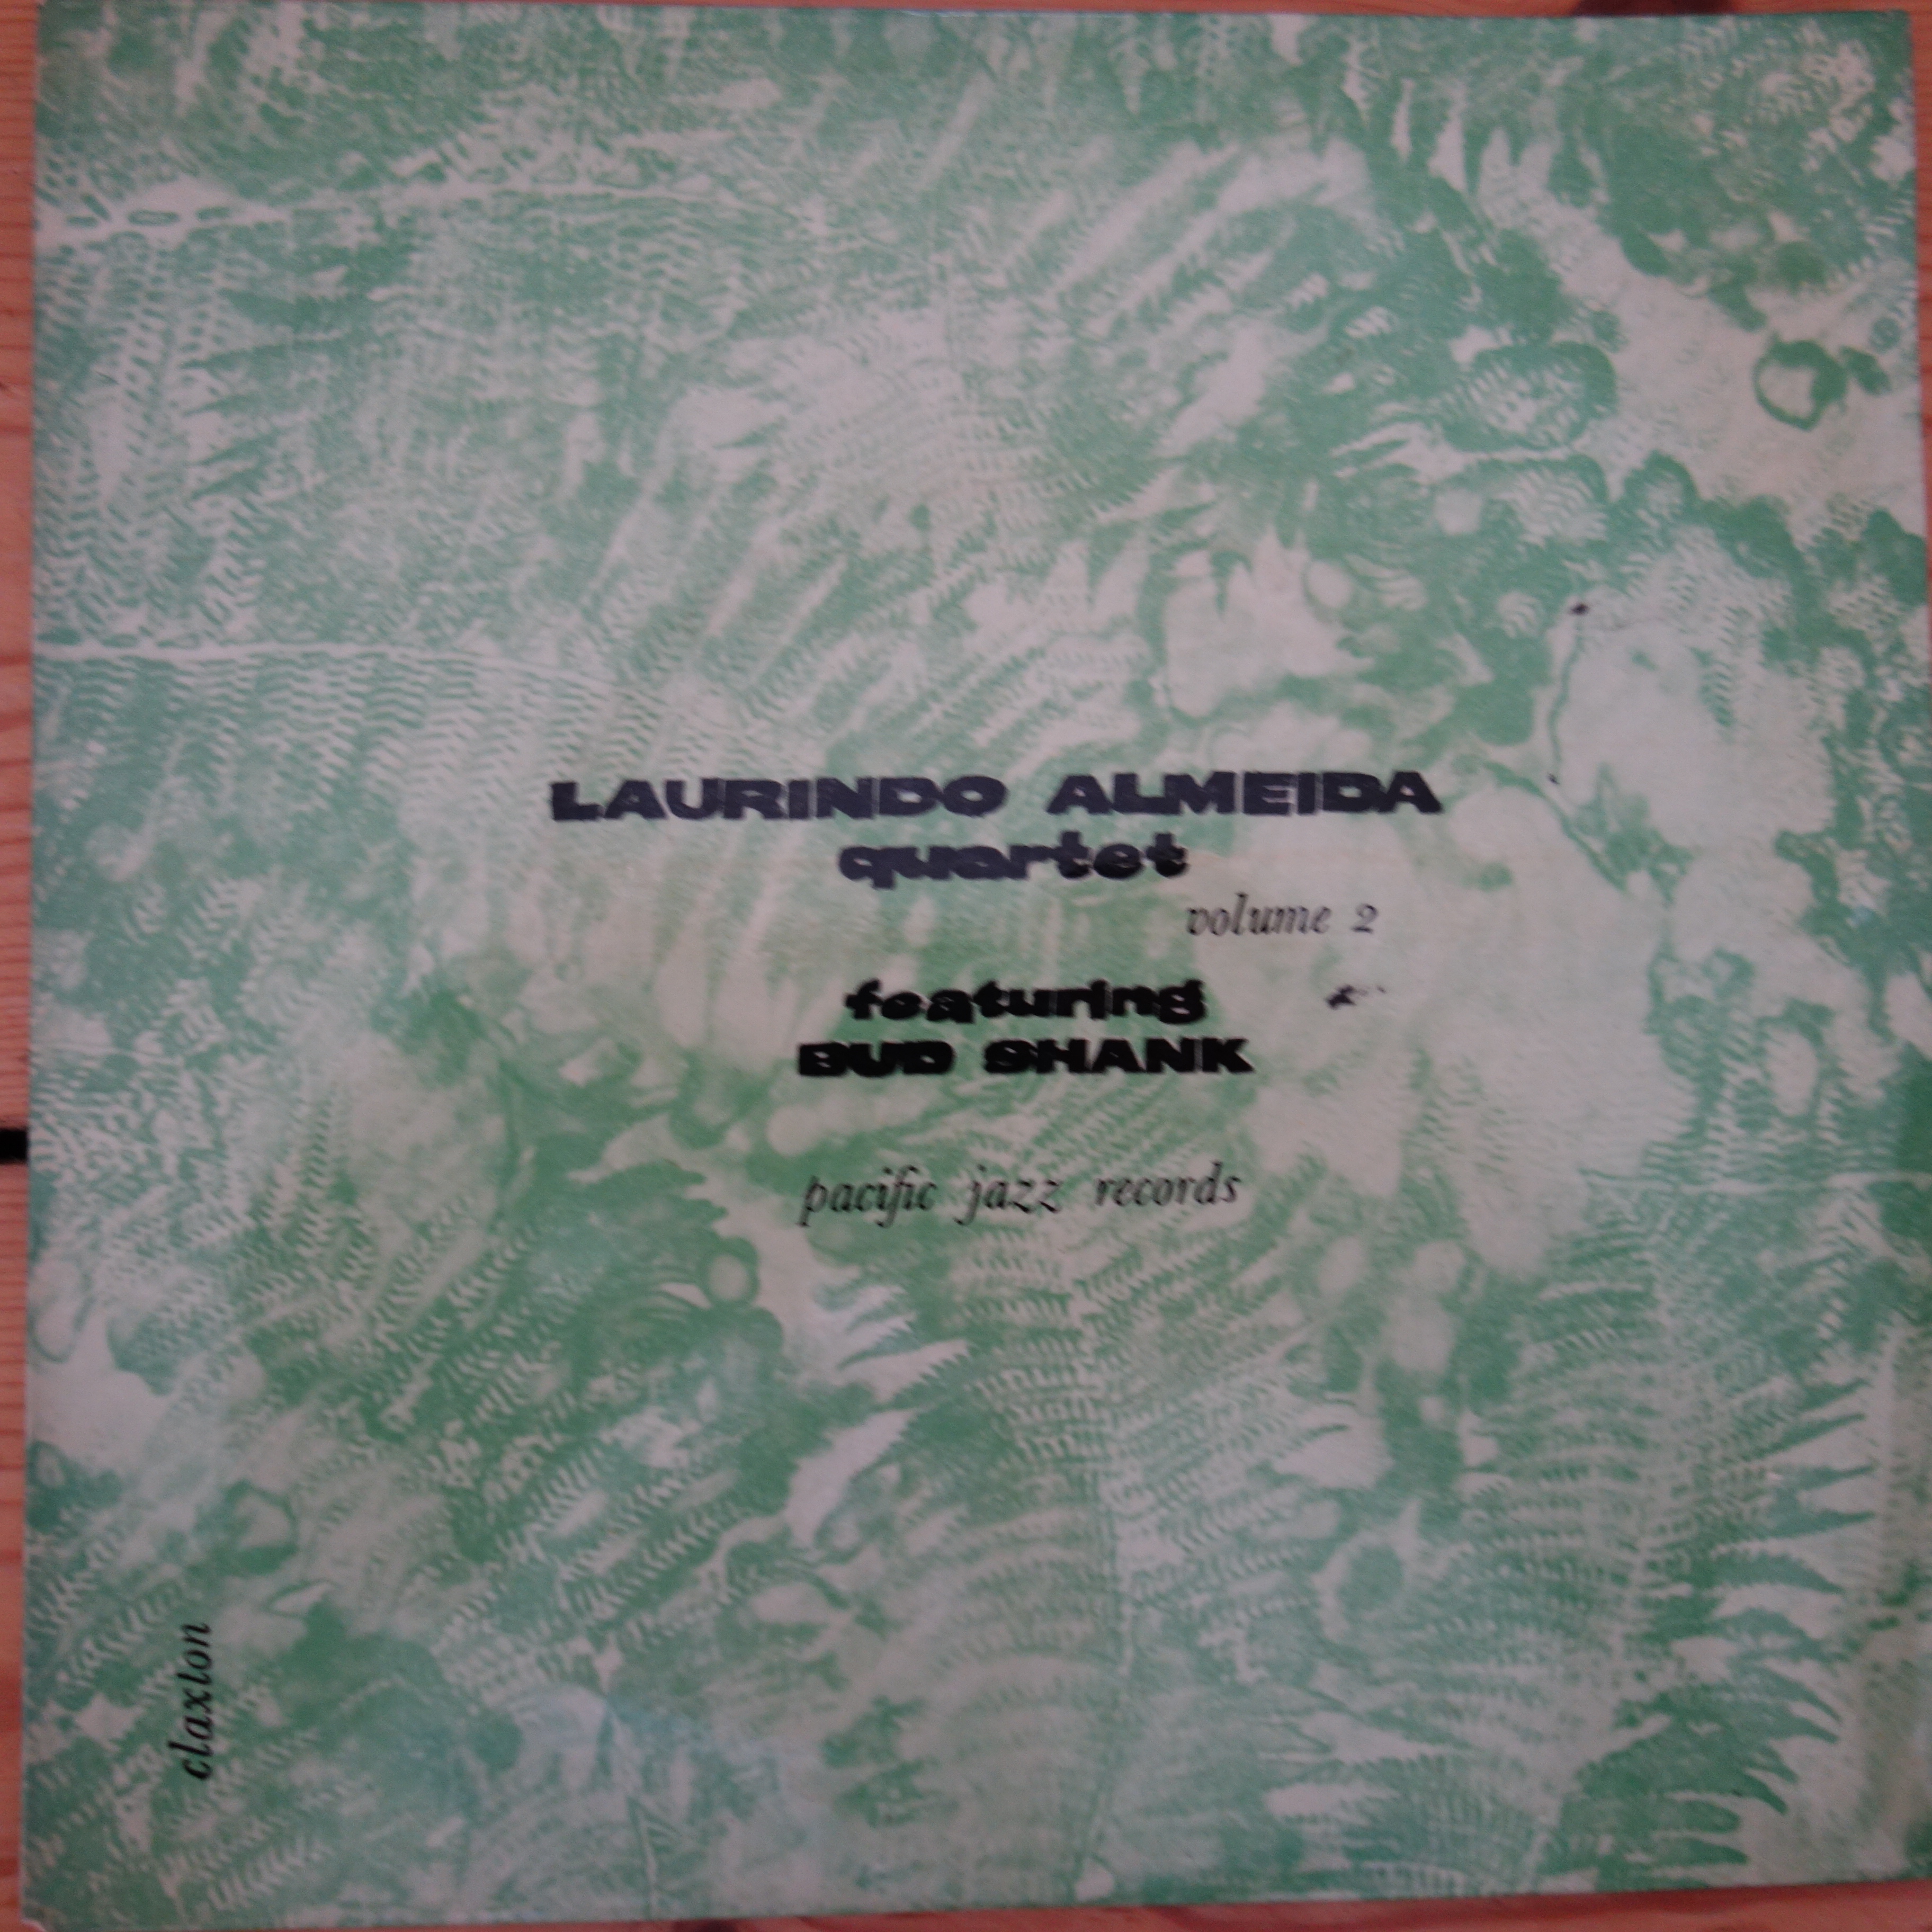 EPV 1141 Laurindo Almeida Quartet Vol. 2 Featuring Bud Shank